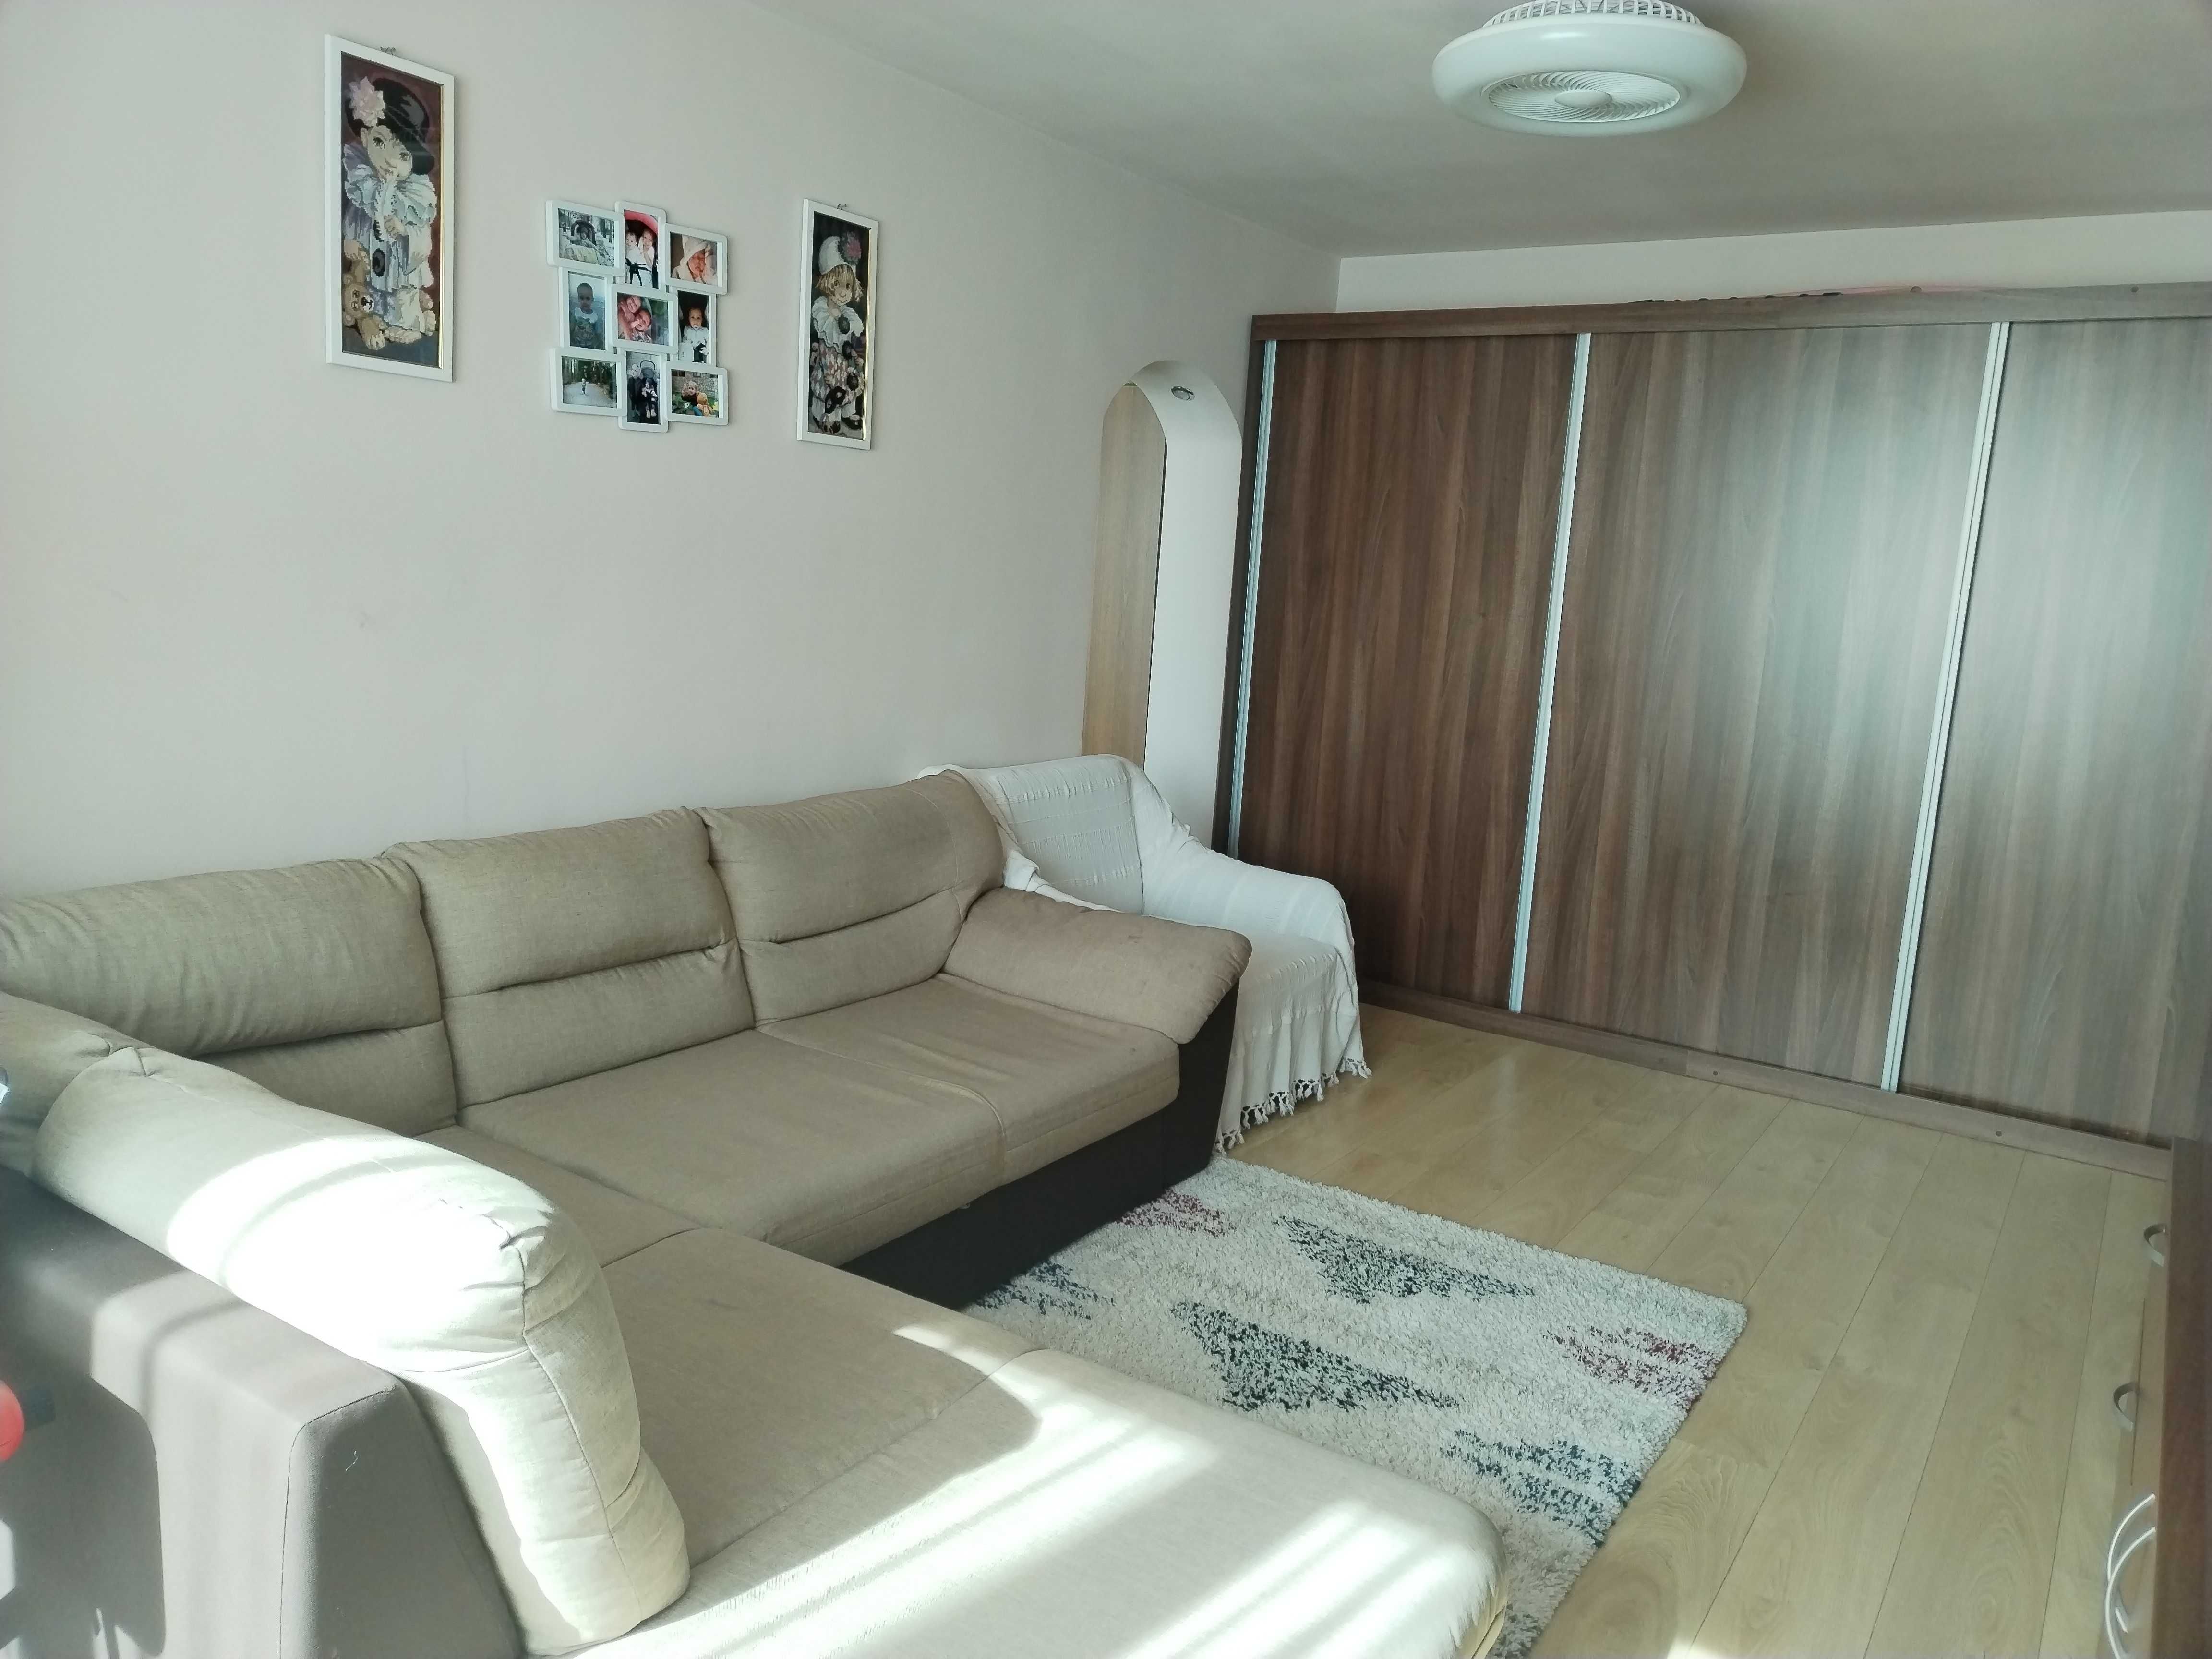 Vând apartament 2 camere în centrul orașului Câmpulung Moldovenesc